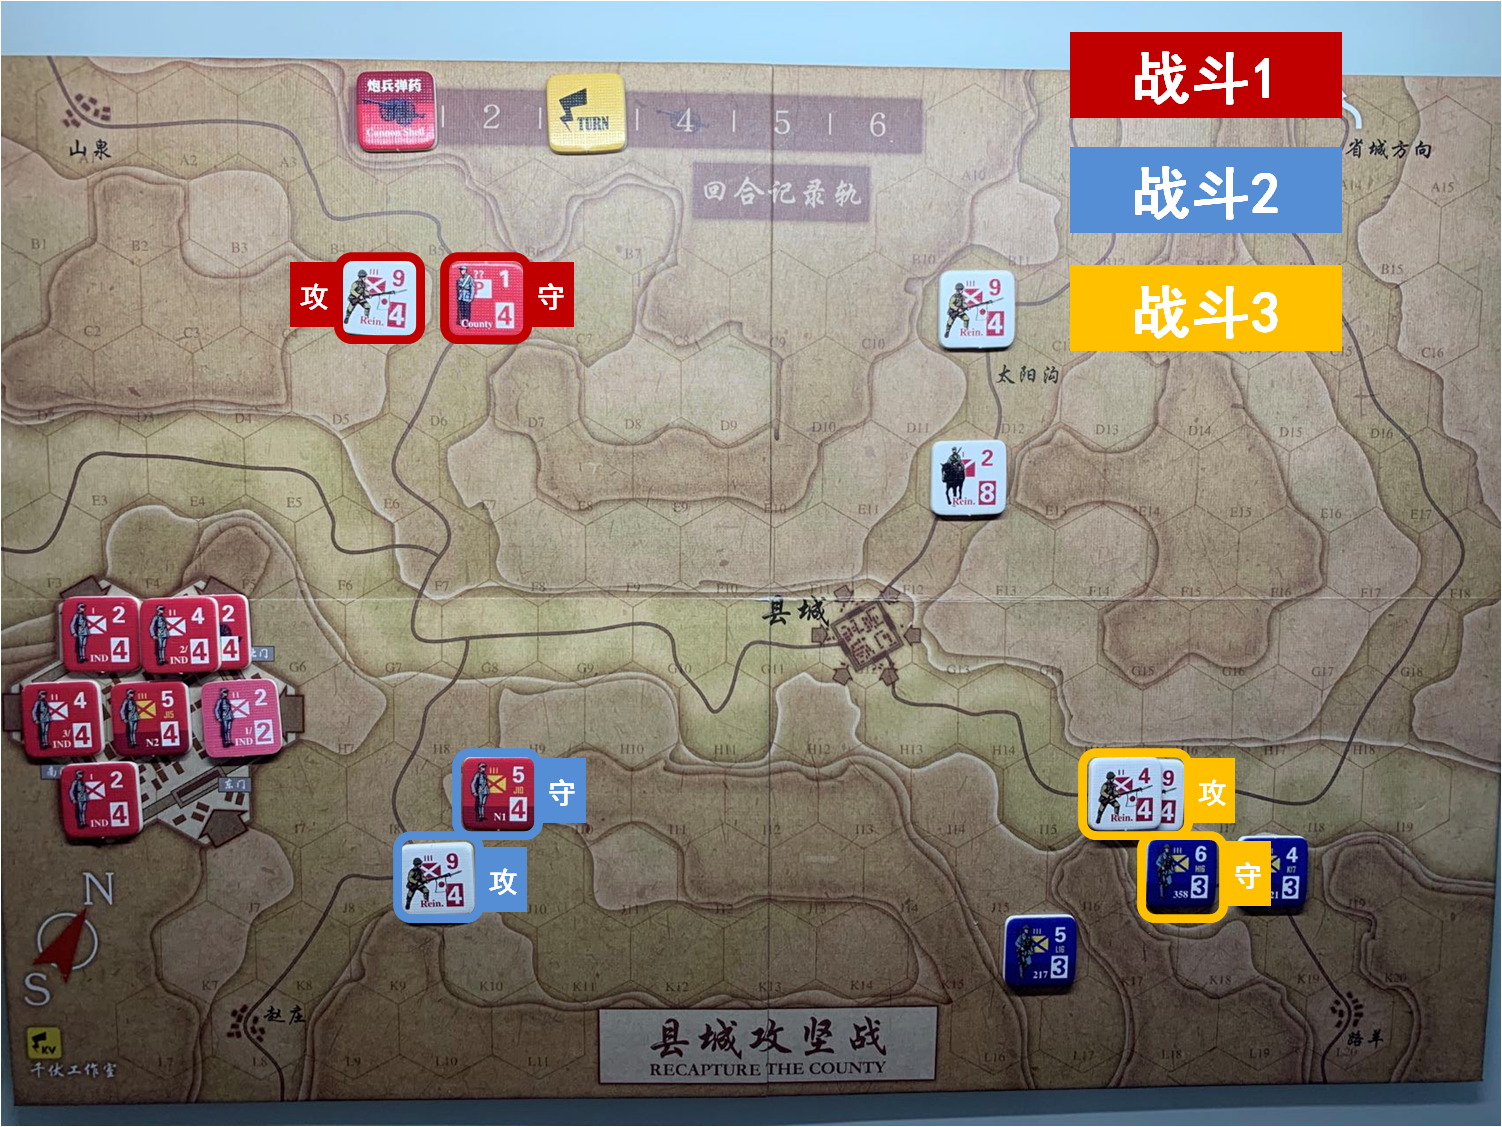 第三回合 日方戰鬥階段 戰鬥計劃